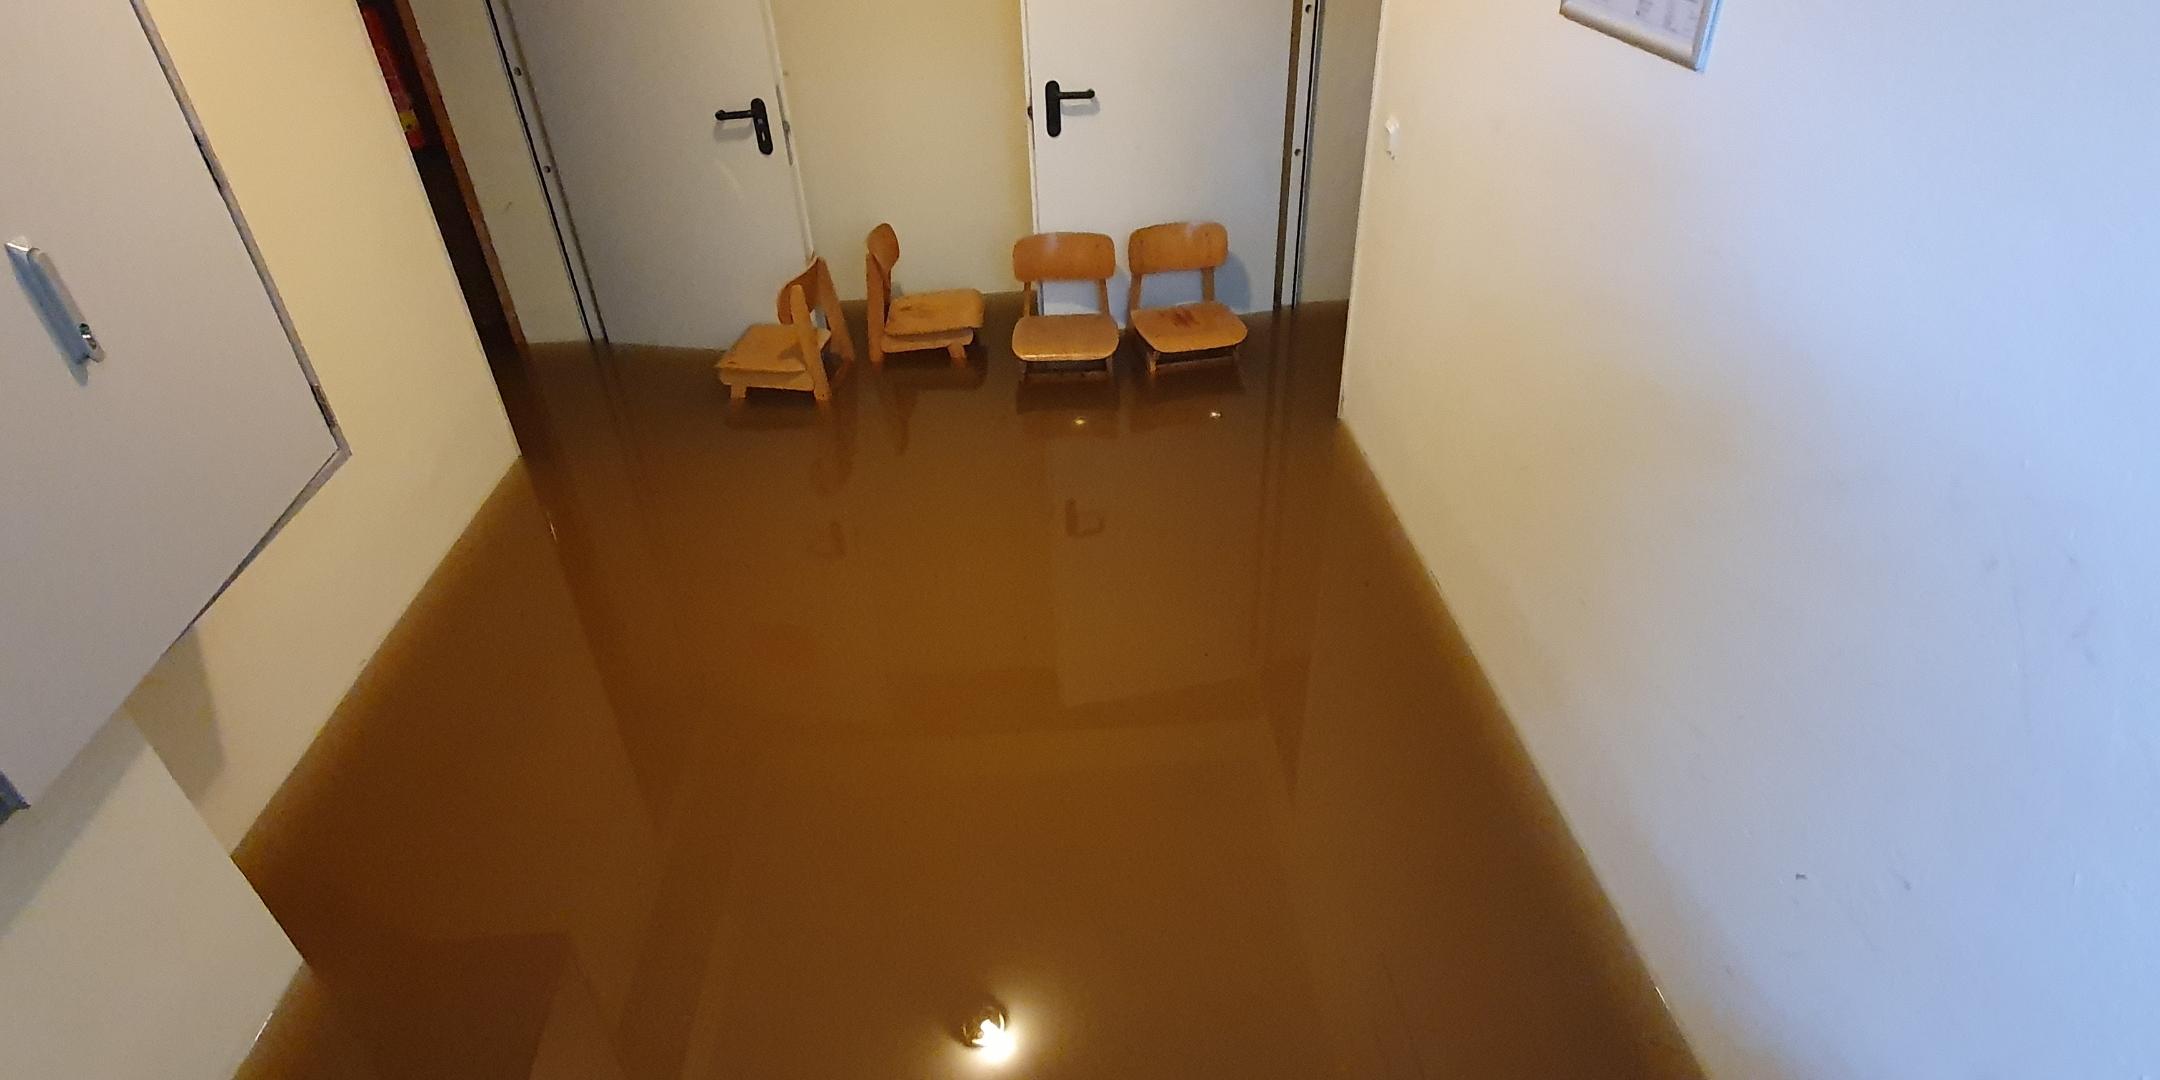 Hochwasser in der katholischen Kita St. Johannes Wellesweiler.